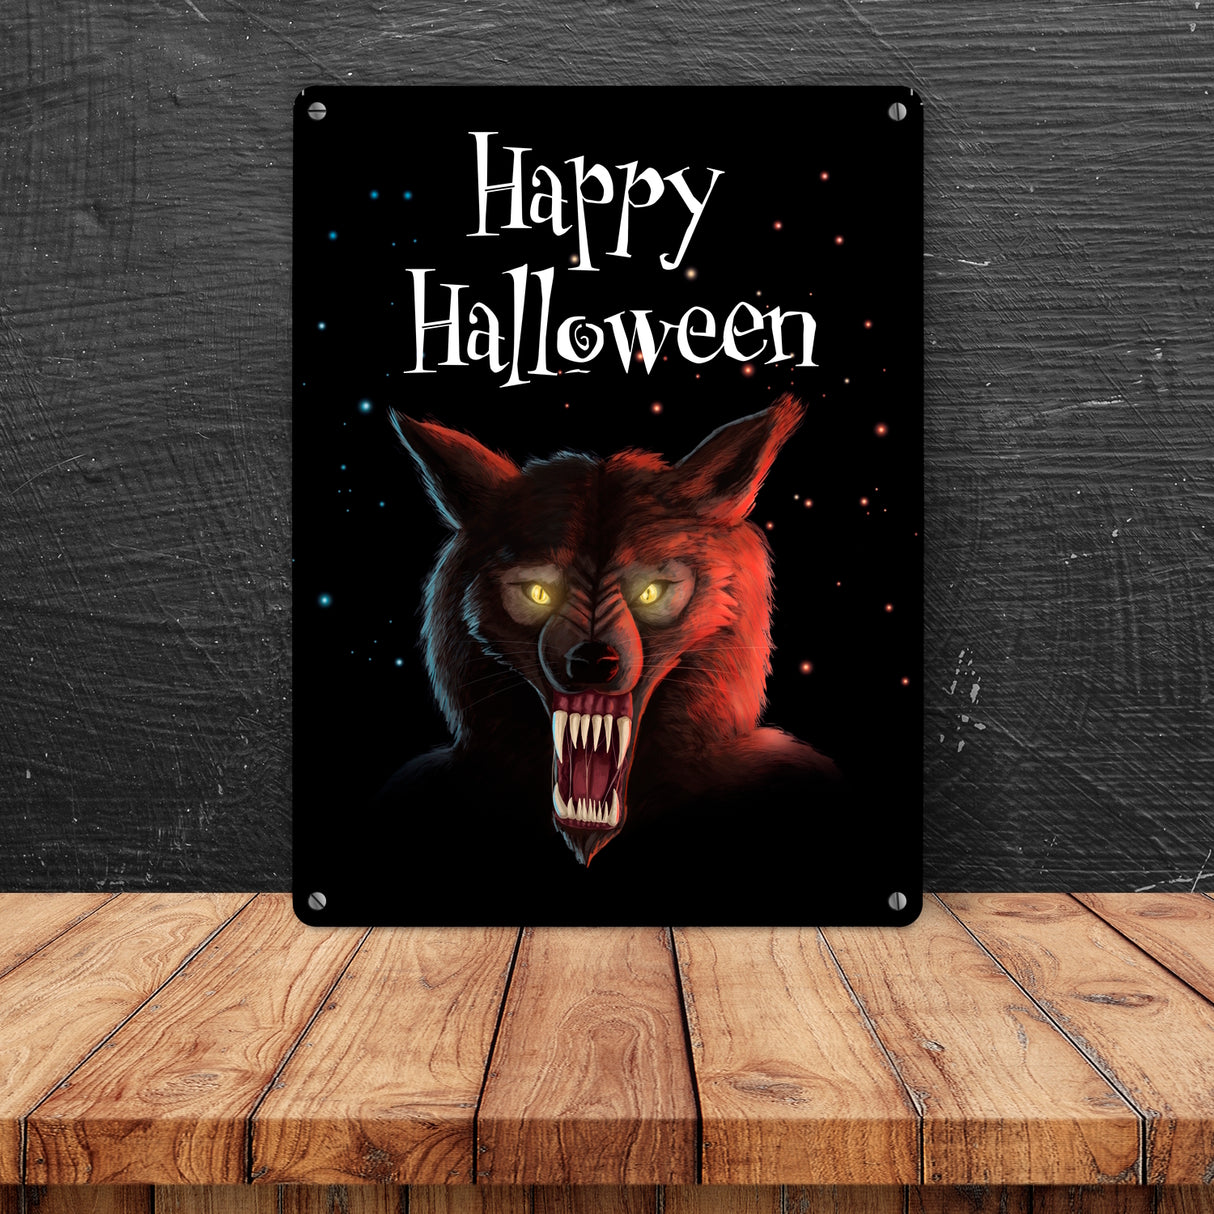 Metallschild mit gruseligem Wolf Motiv und Happy Halloween Schriftzug